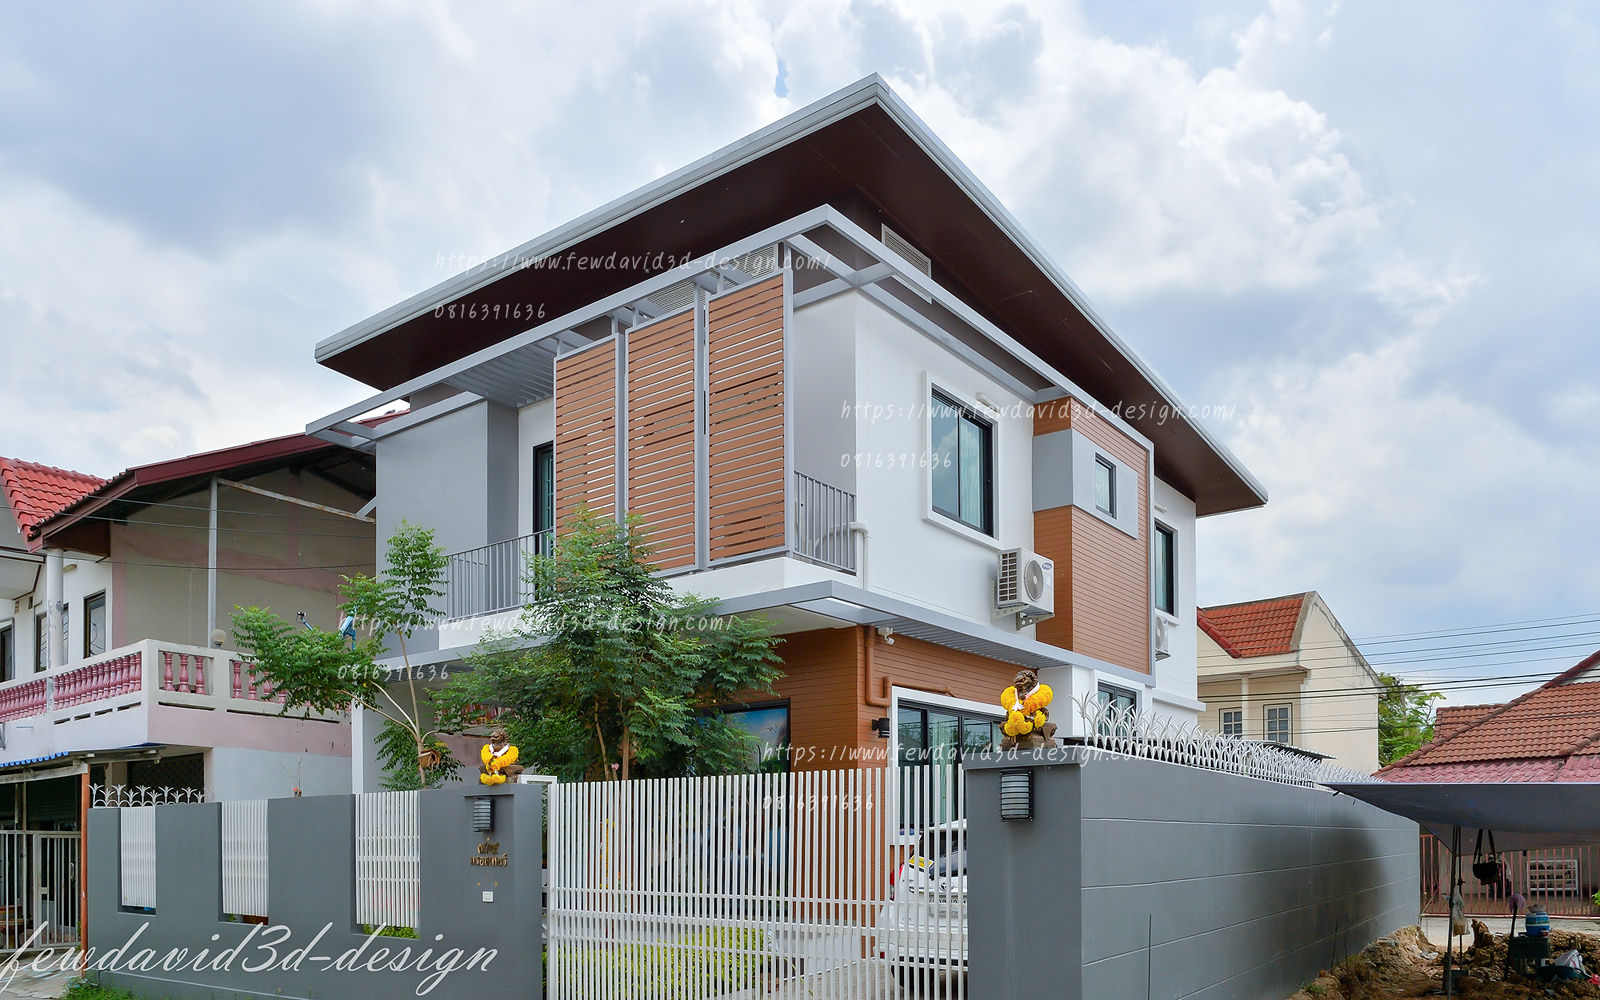 งานออกแบบบ้านพักอาศัย2ชั้น อ.แก่งคอย จ.สระบุรี, fewdavid3d-design fewdavid3d-design